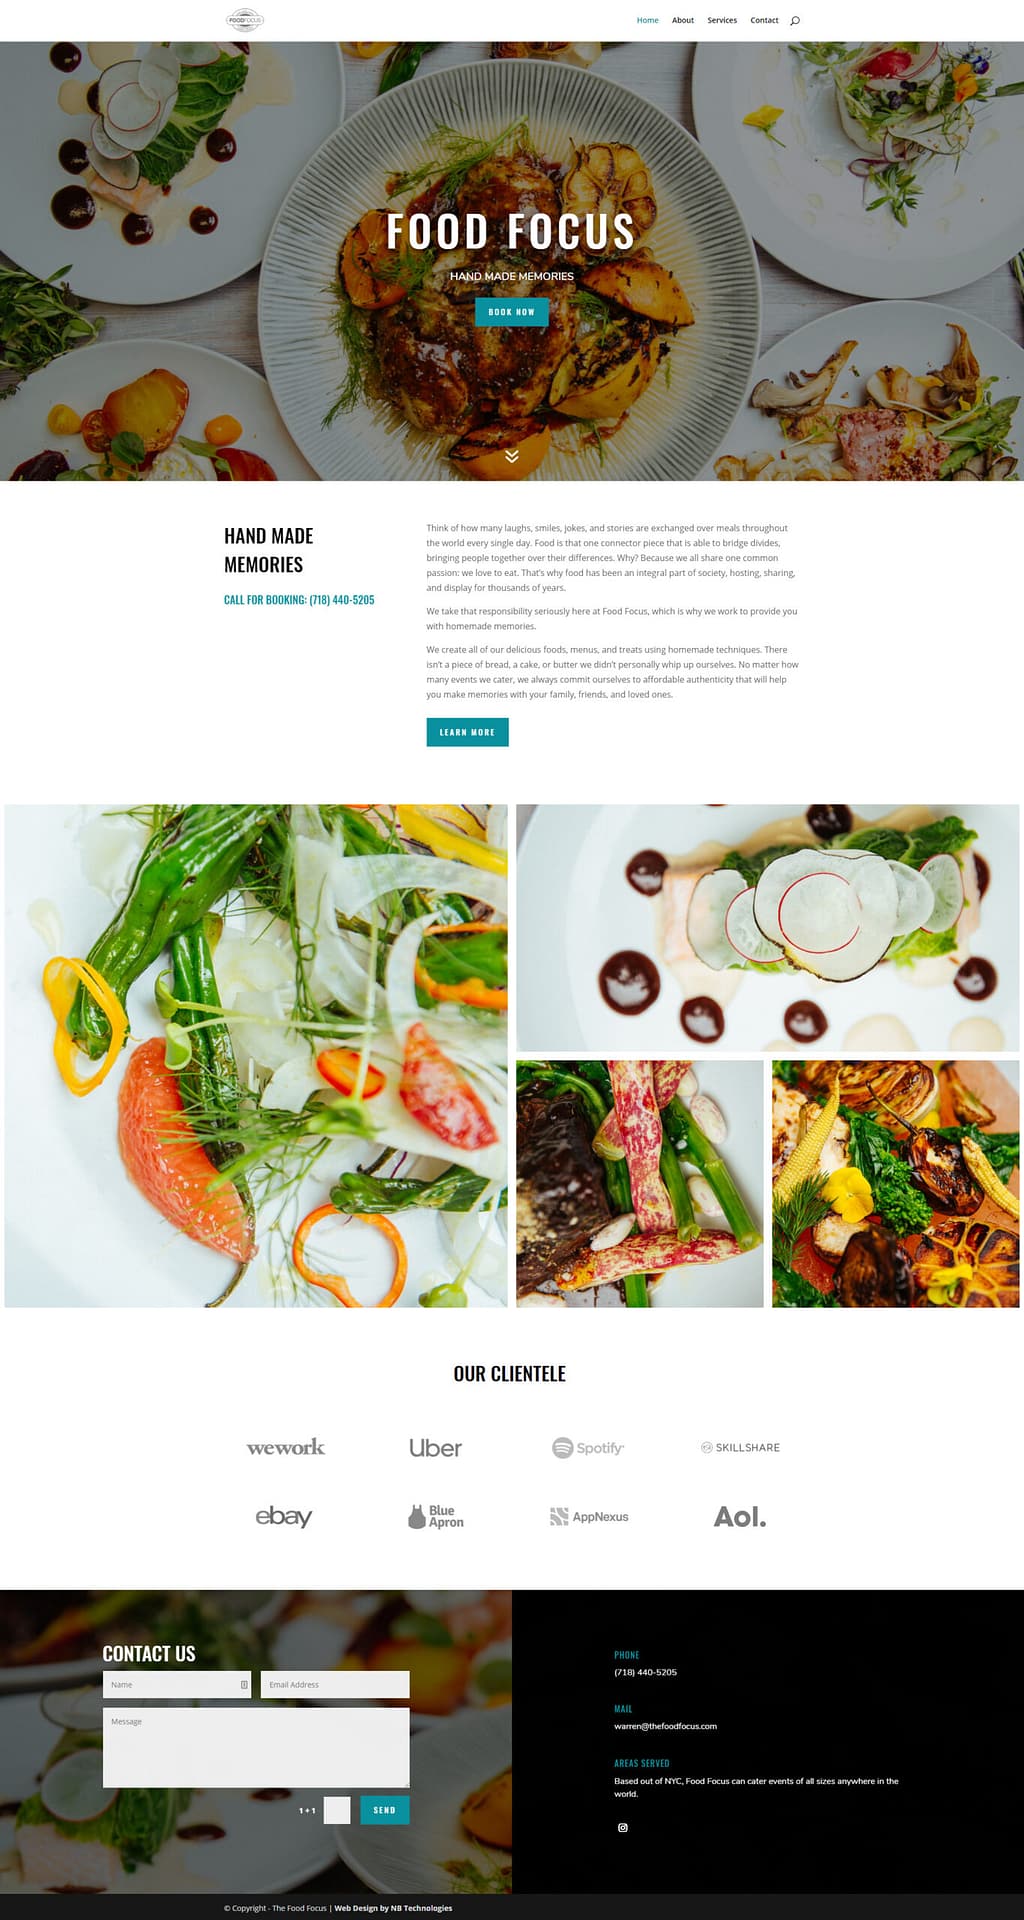 Food Focus Website Homepage Design by NB Technologies